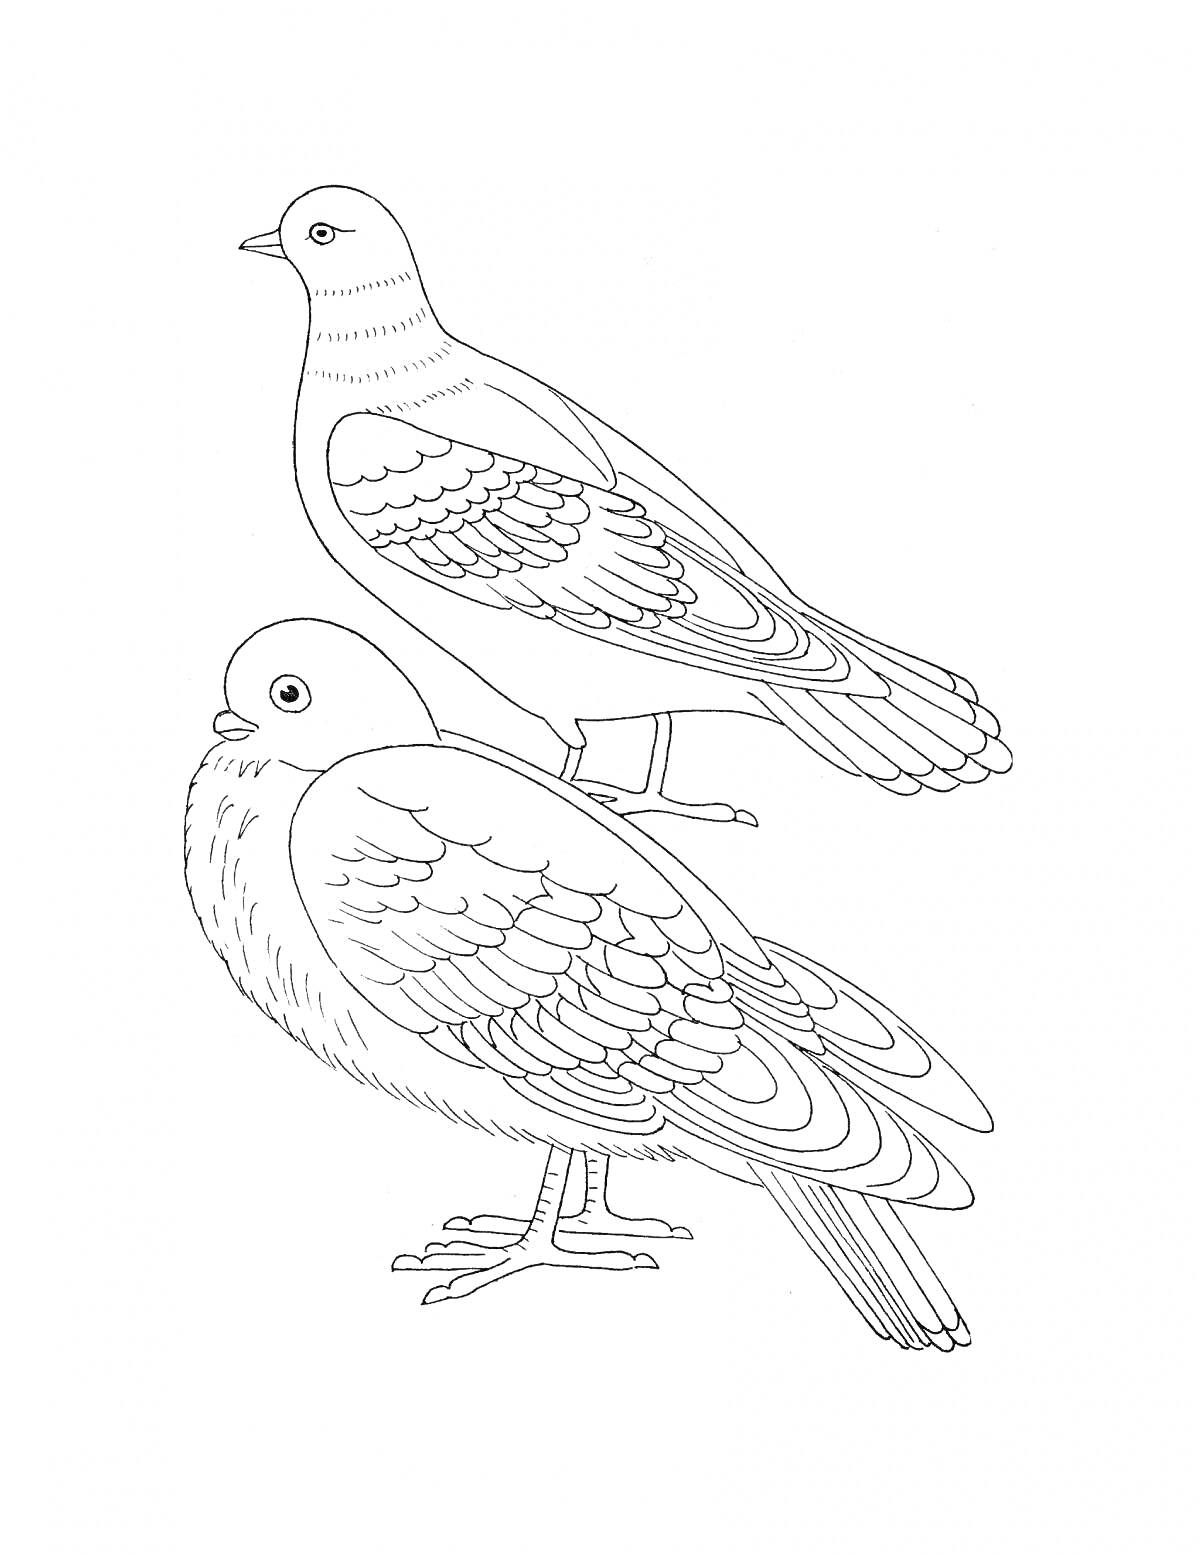 Раскраска Две зимующие птицы - в профиль и лицом; верхняя птица поет.